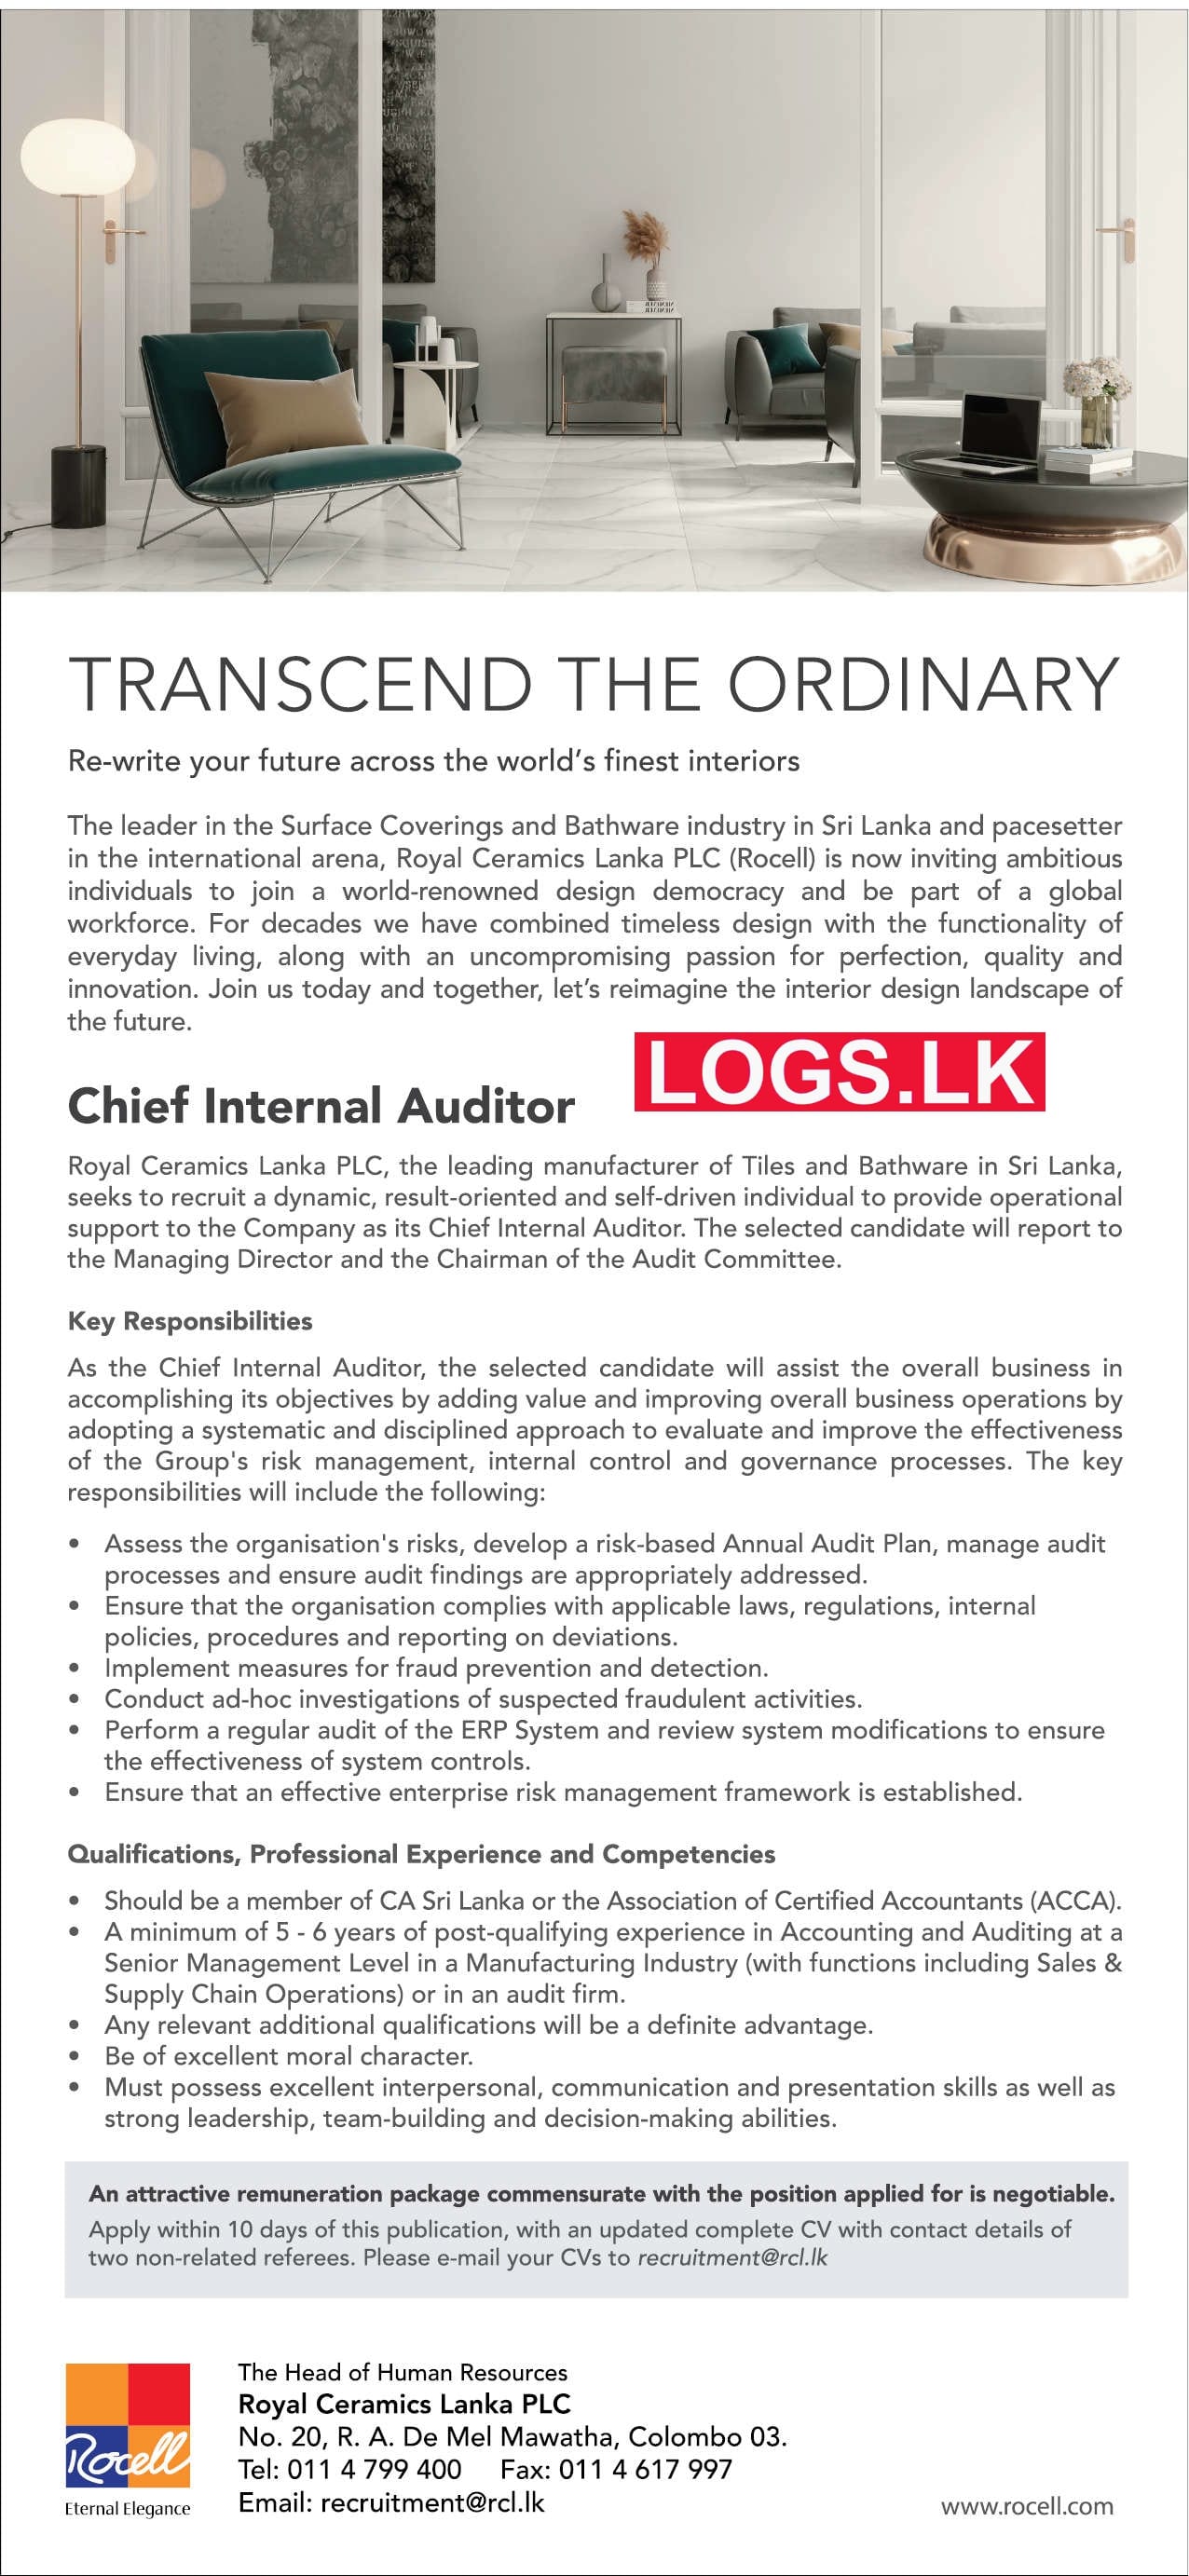 Chief Internal Auditor Job Vacancy at Royal Ceramics Lanka Job Vacancies